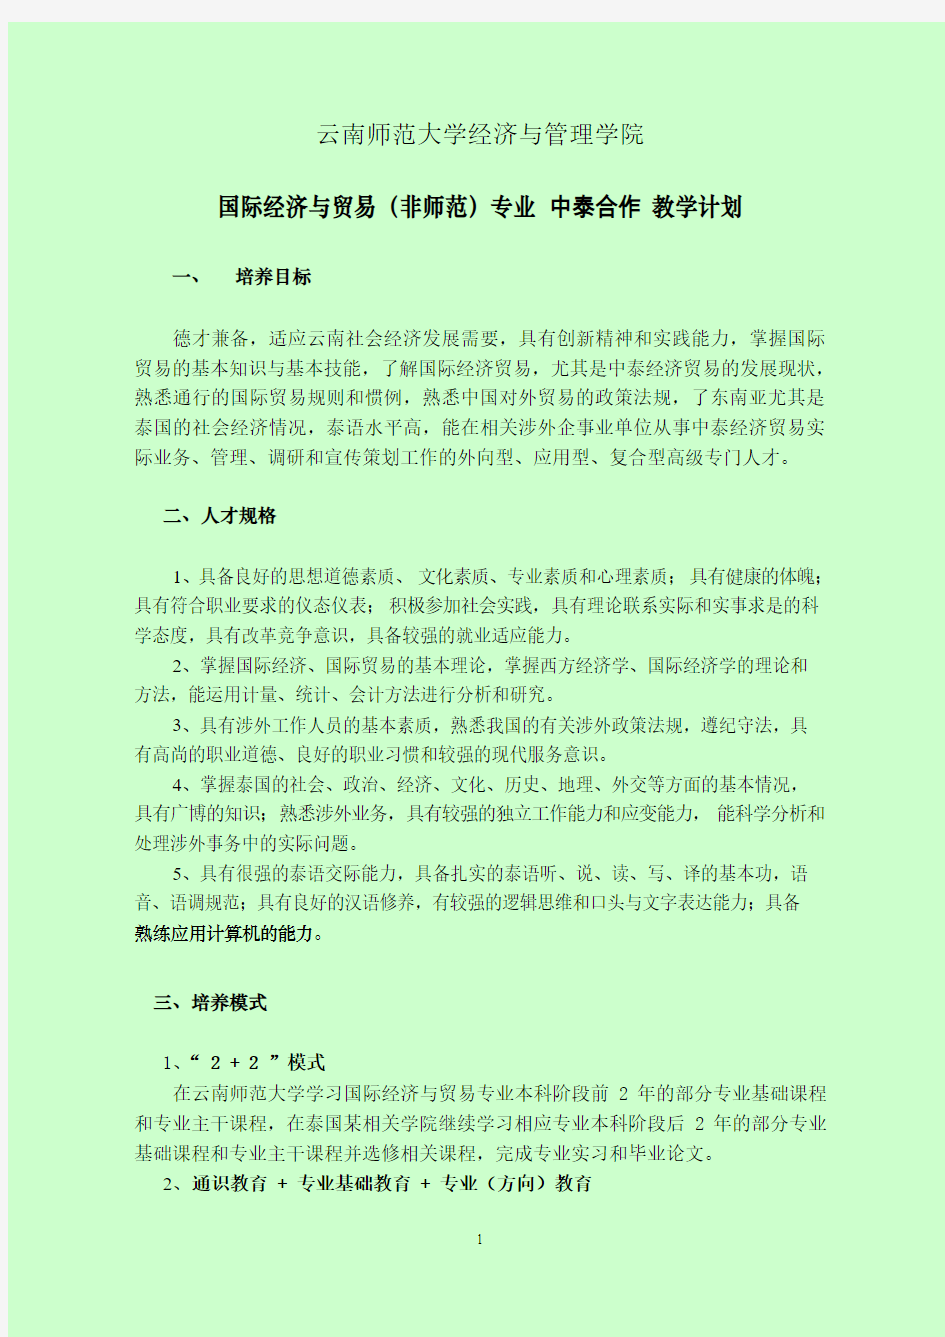 云南师范大学本科人才培养学分制计划改革方案-国际汉语教育学院